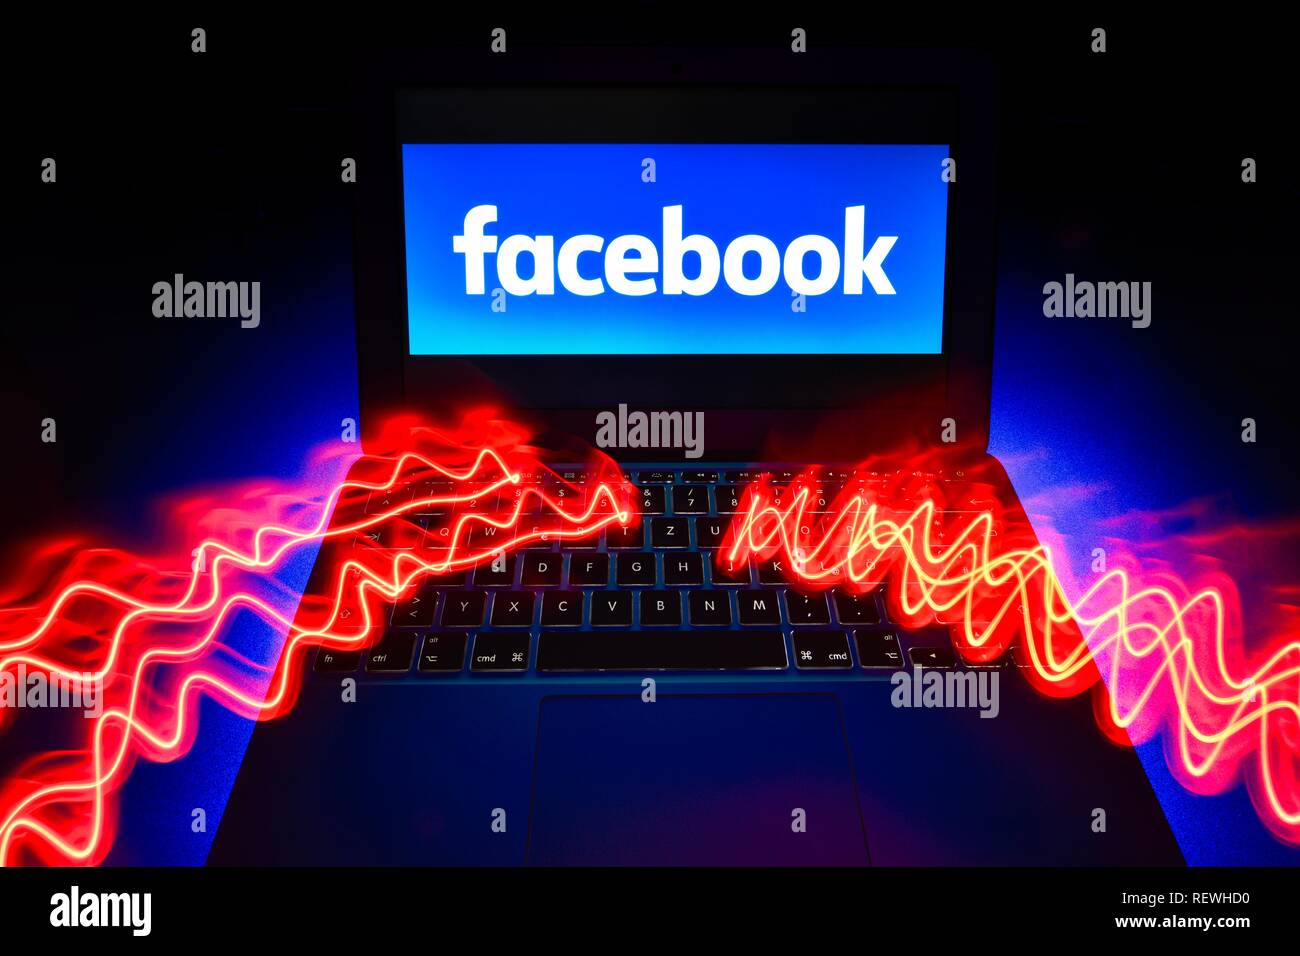 Imagen símbolo de la Ciberdelincuencia Facebook, delitos informáticos, protección de datos, Alemania Foto de stock